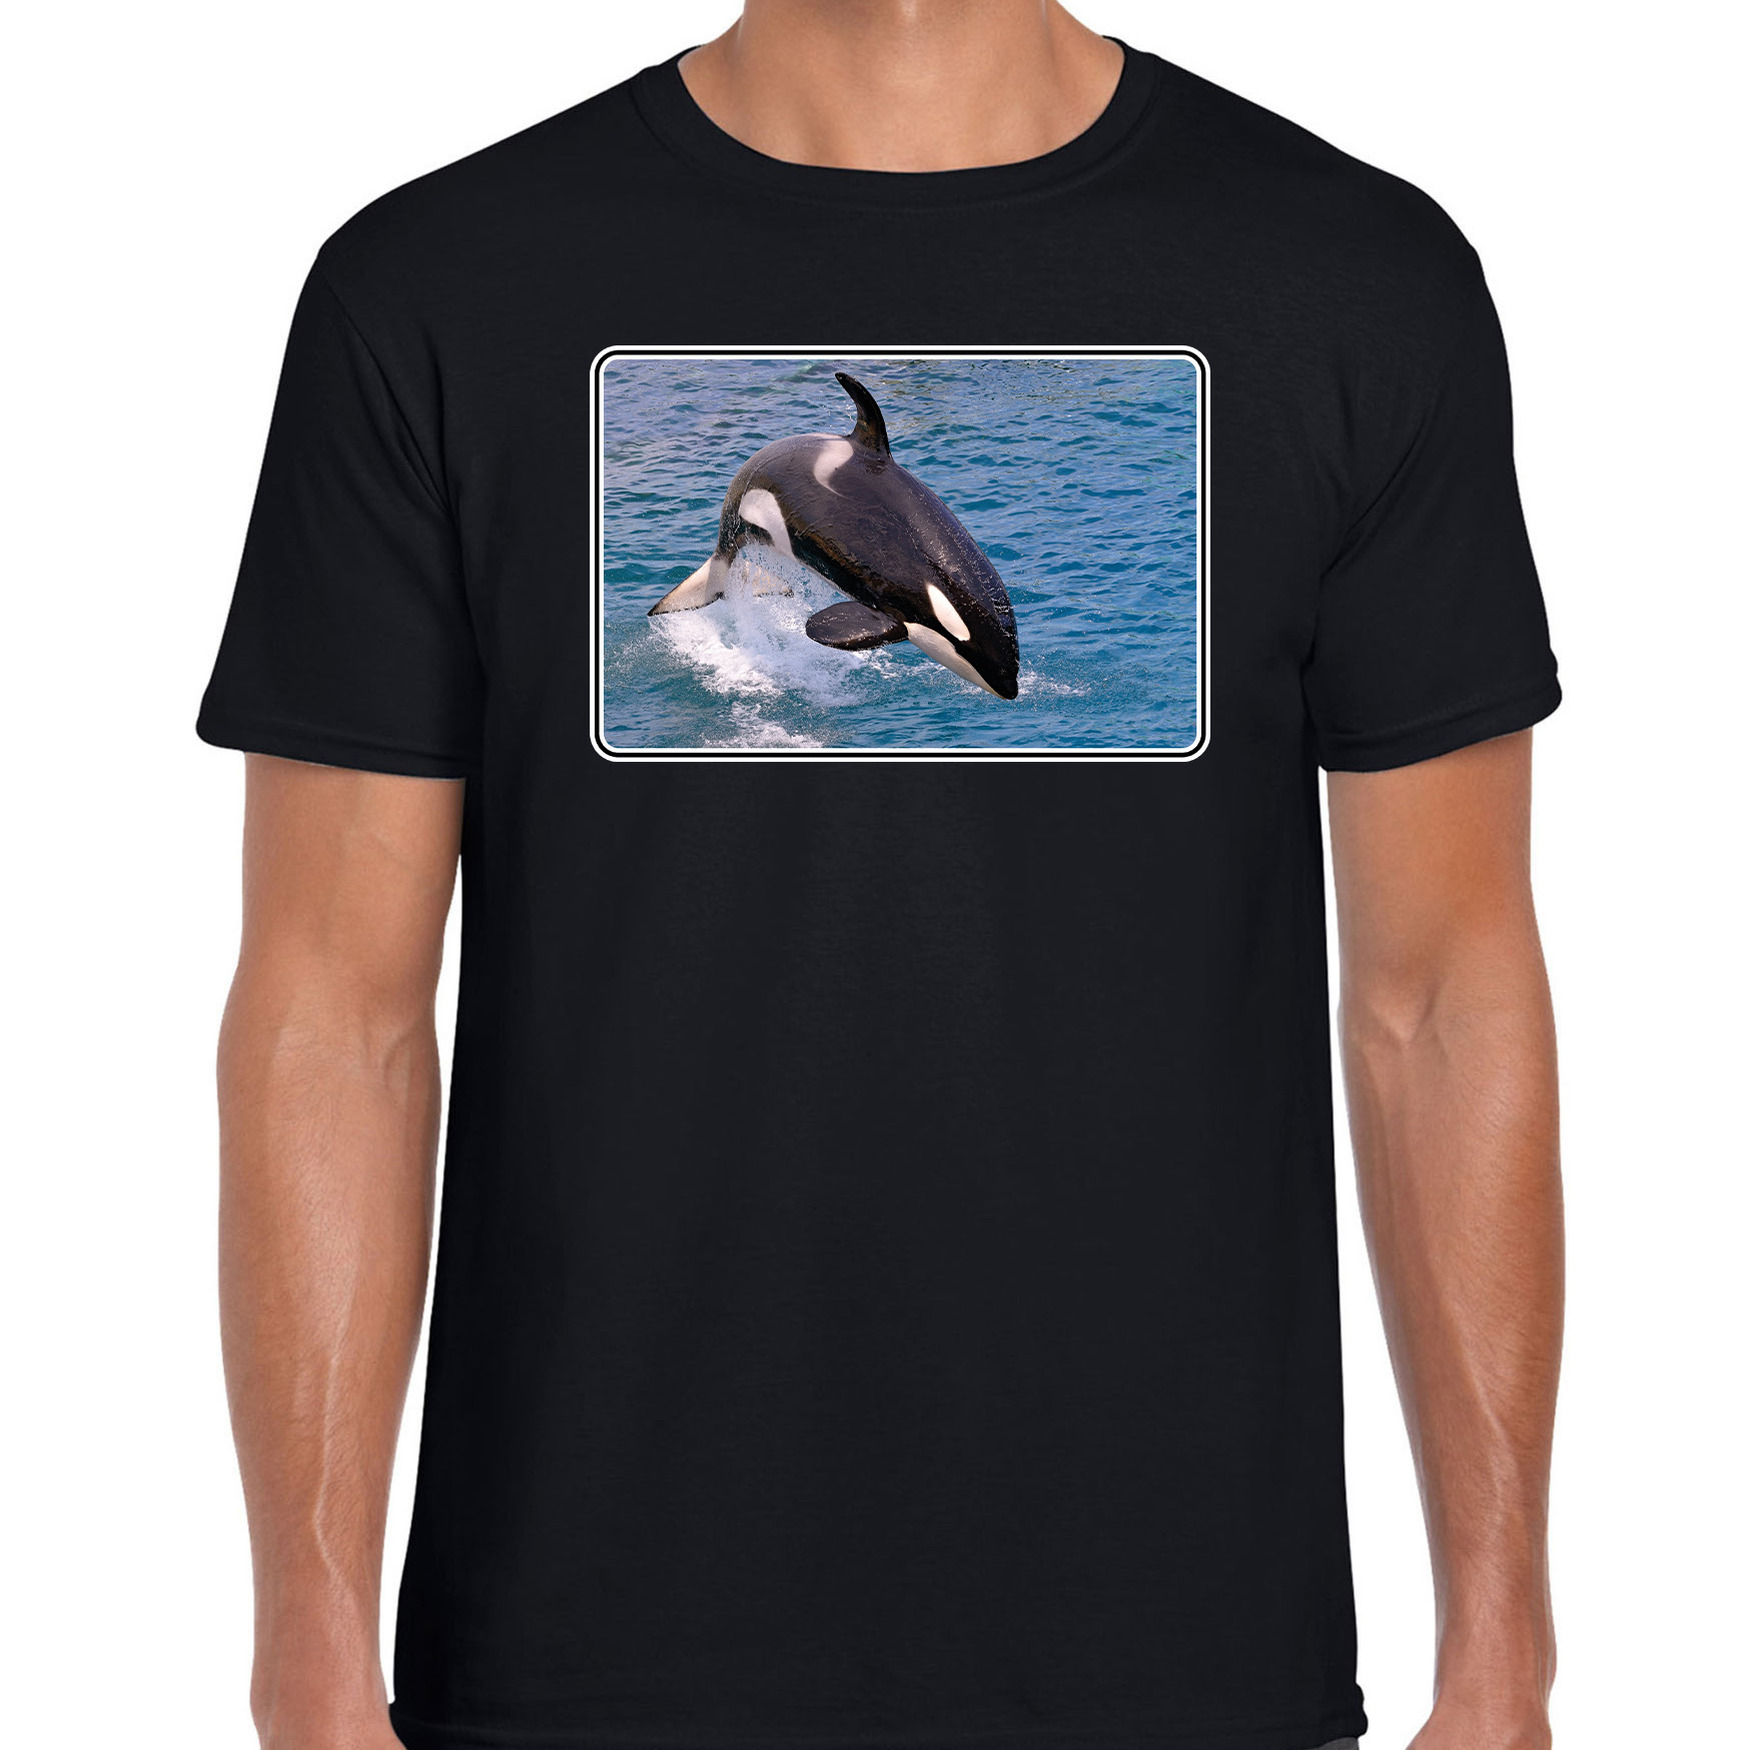 Dieren t-shirt met orka walvissen foto zwart voor heren